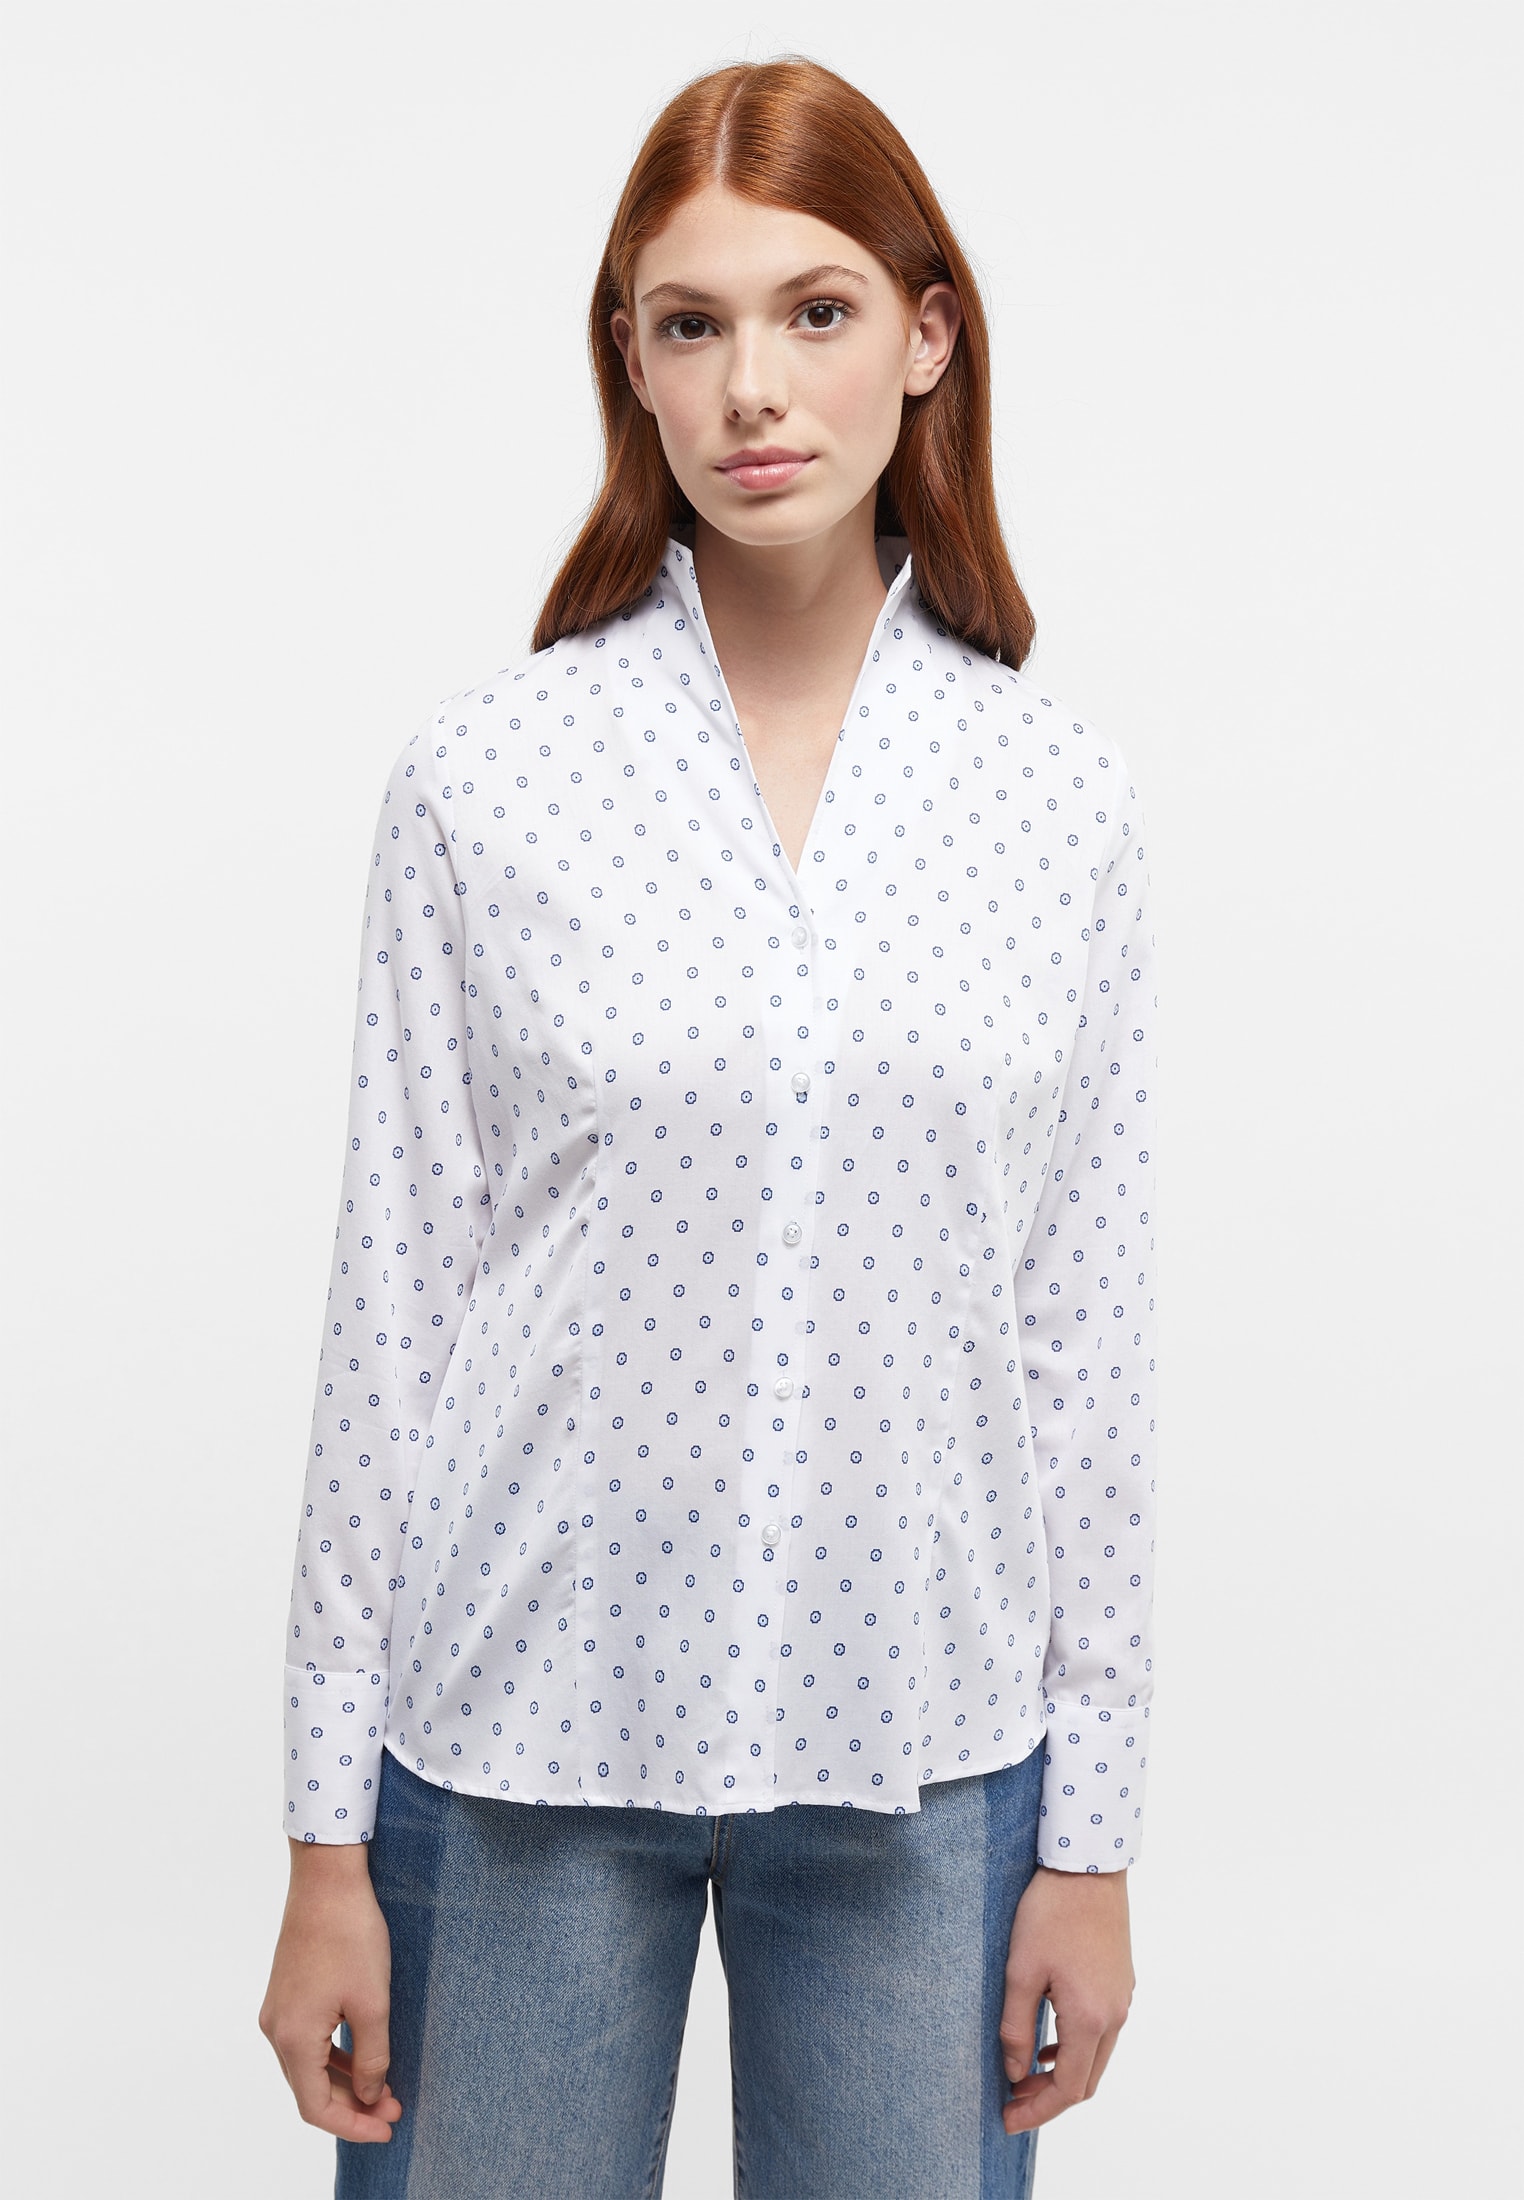 overhemdblouse in wit/lichtblauw gedrukt